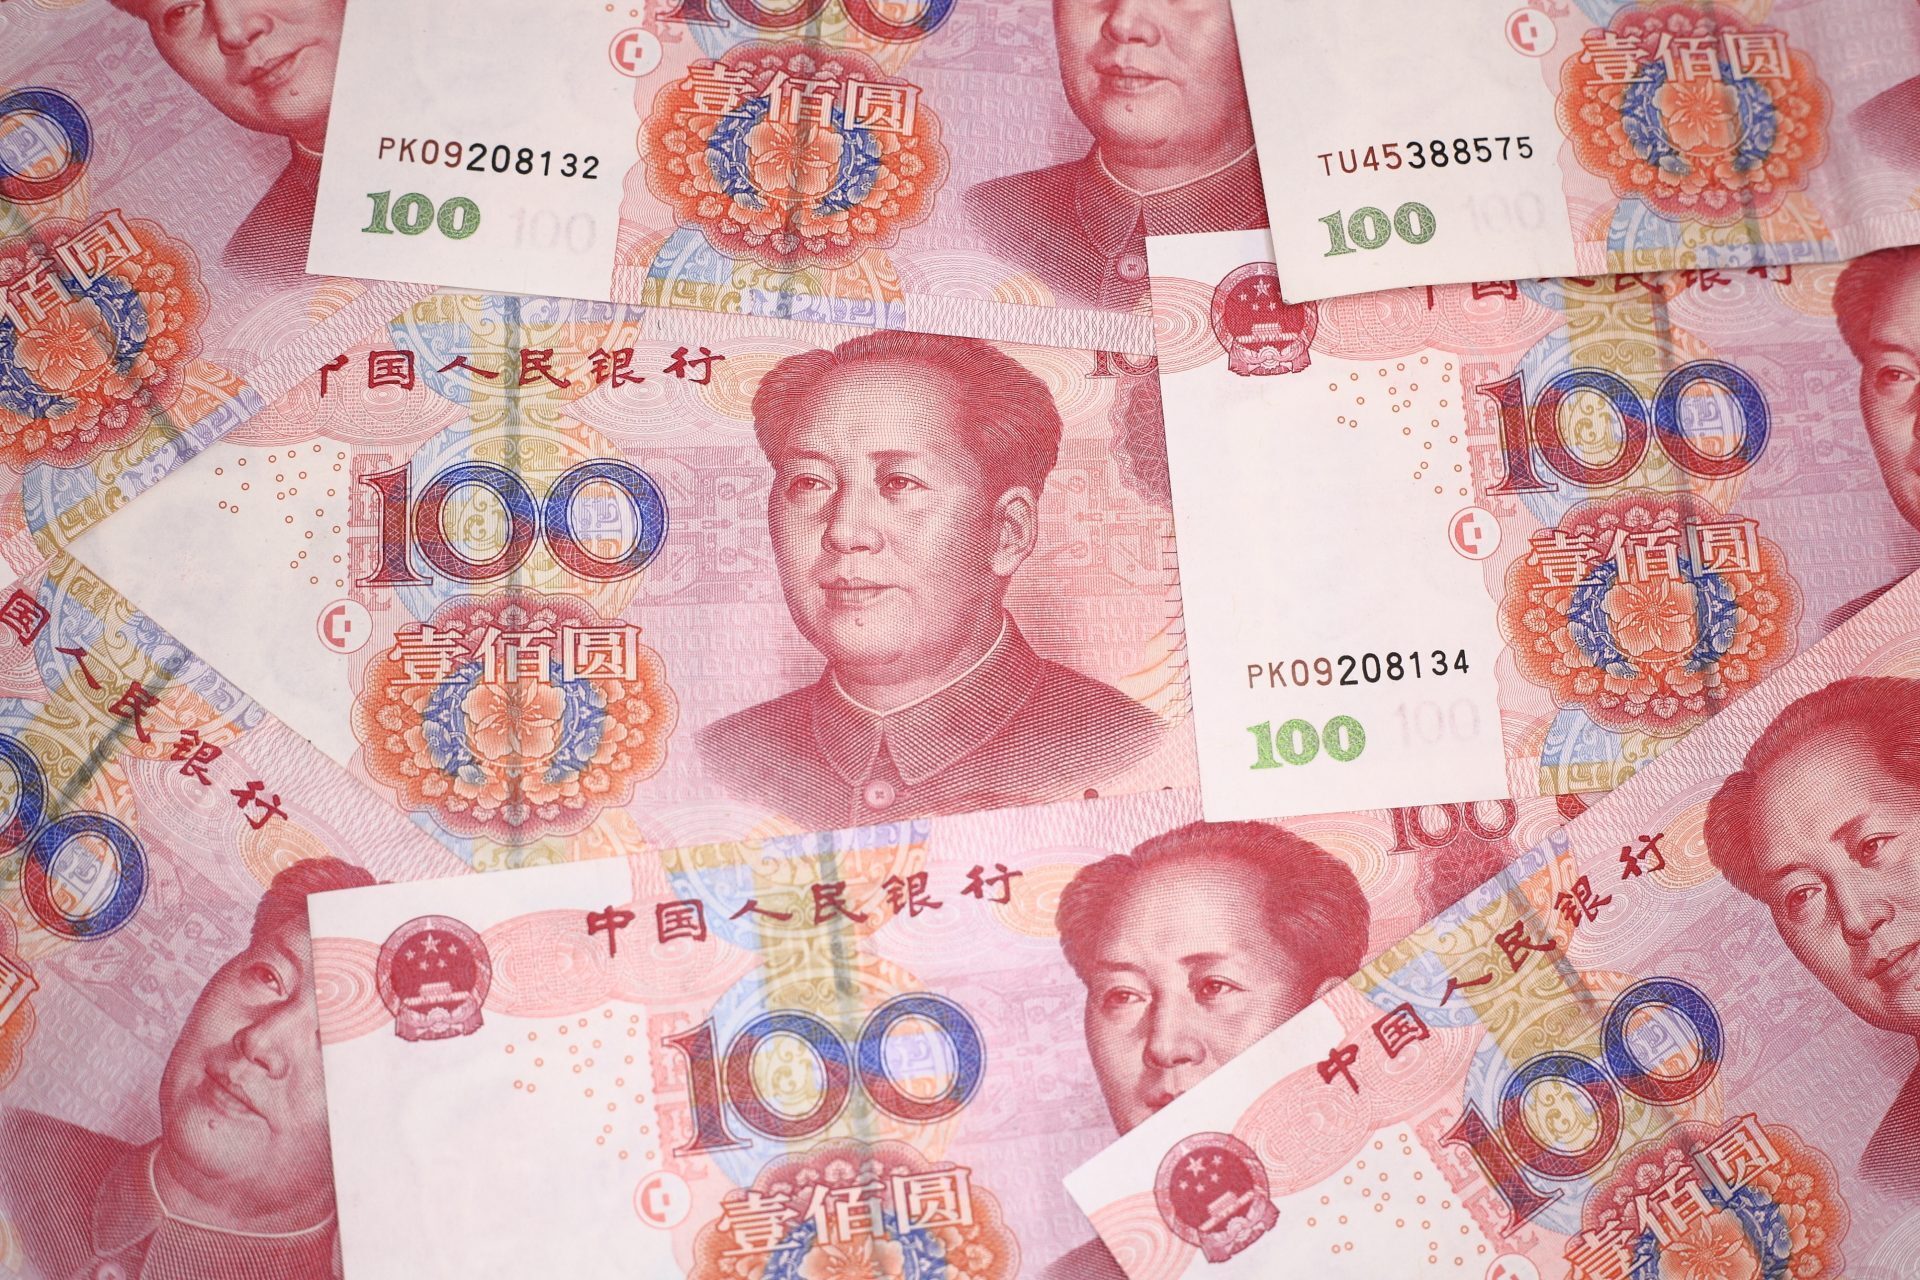 Китайские деньги картинки. Юань валюта Тайланд. RMB валюта какой страны. Китайские деньги картинки которые дарят на новый год.